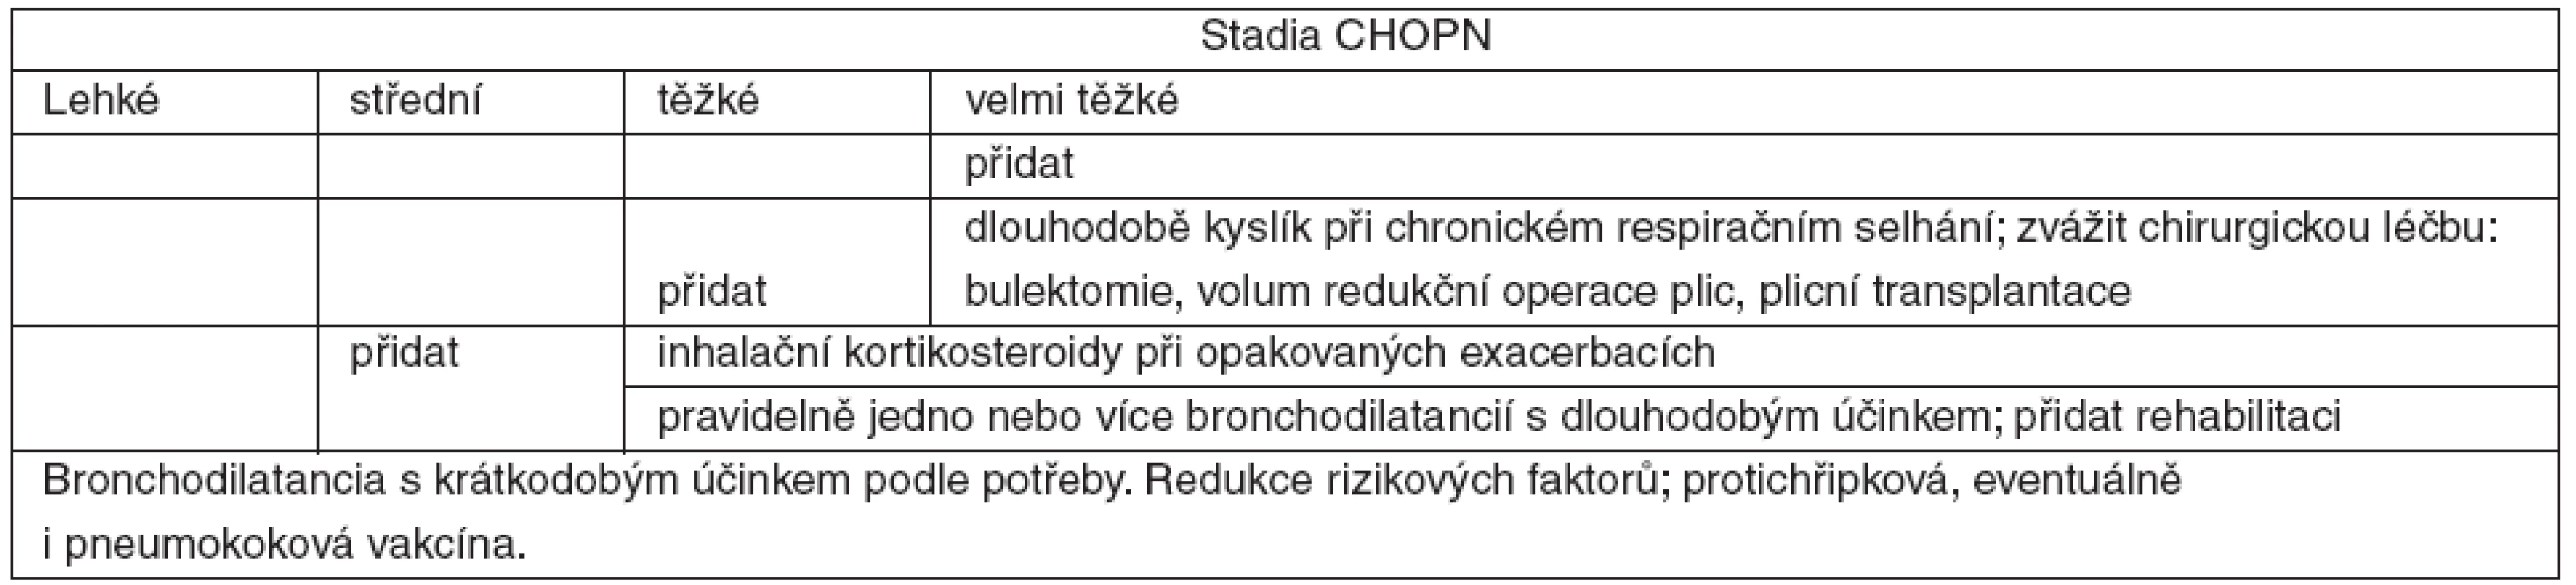 Stupňovitá léčba podle stadií CHOPN – GOLD [1, 2]